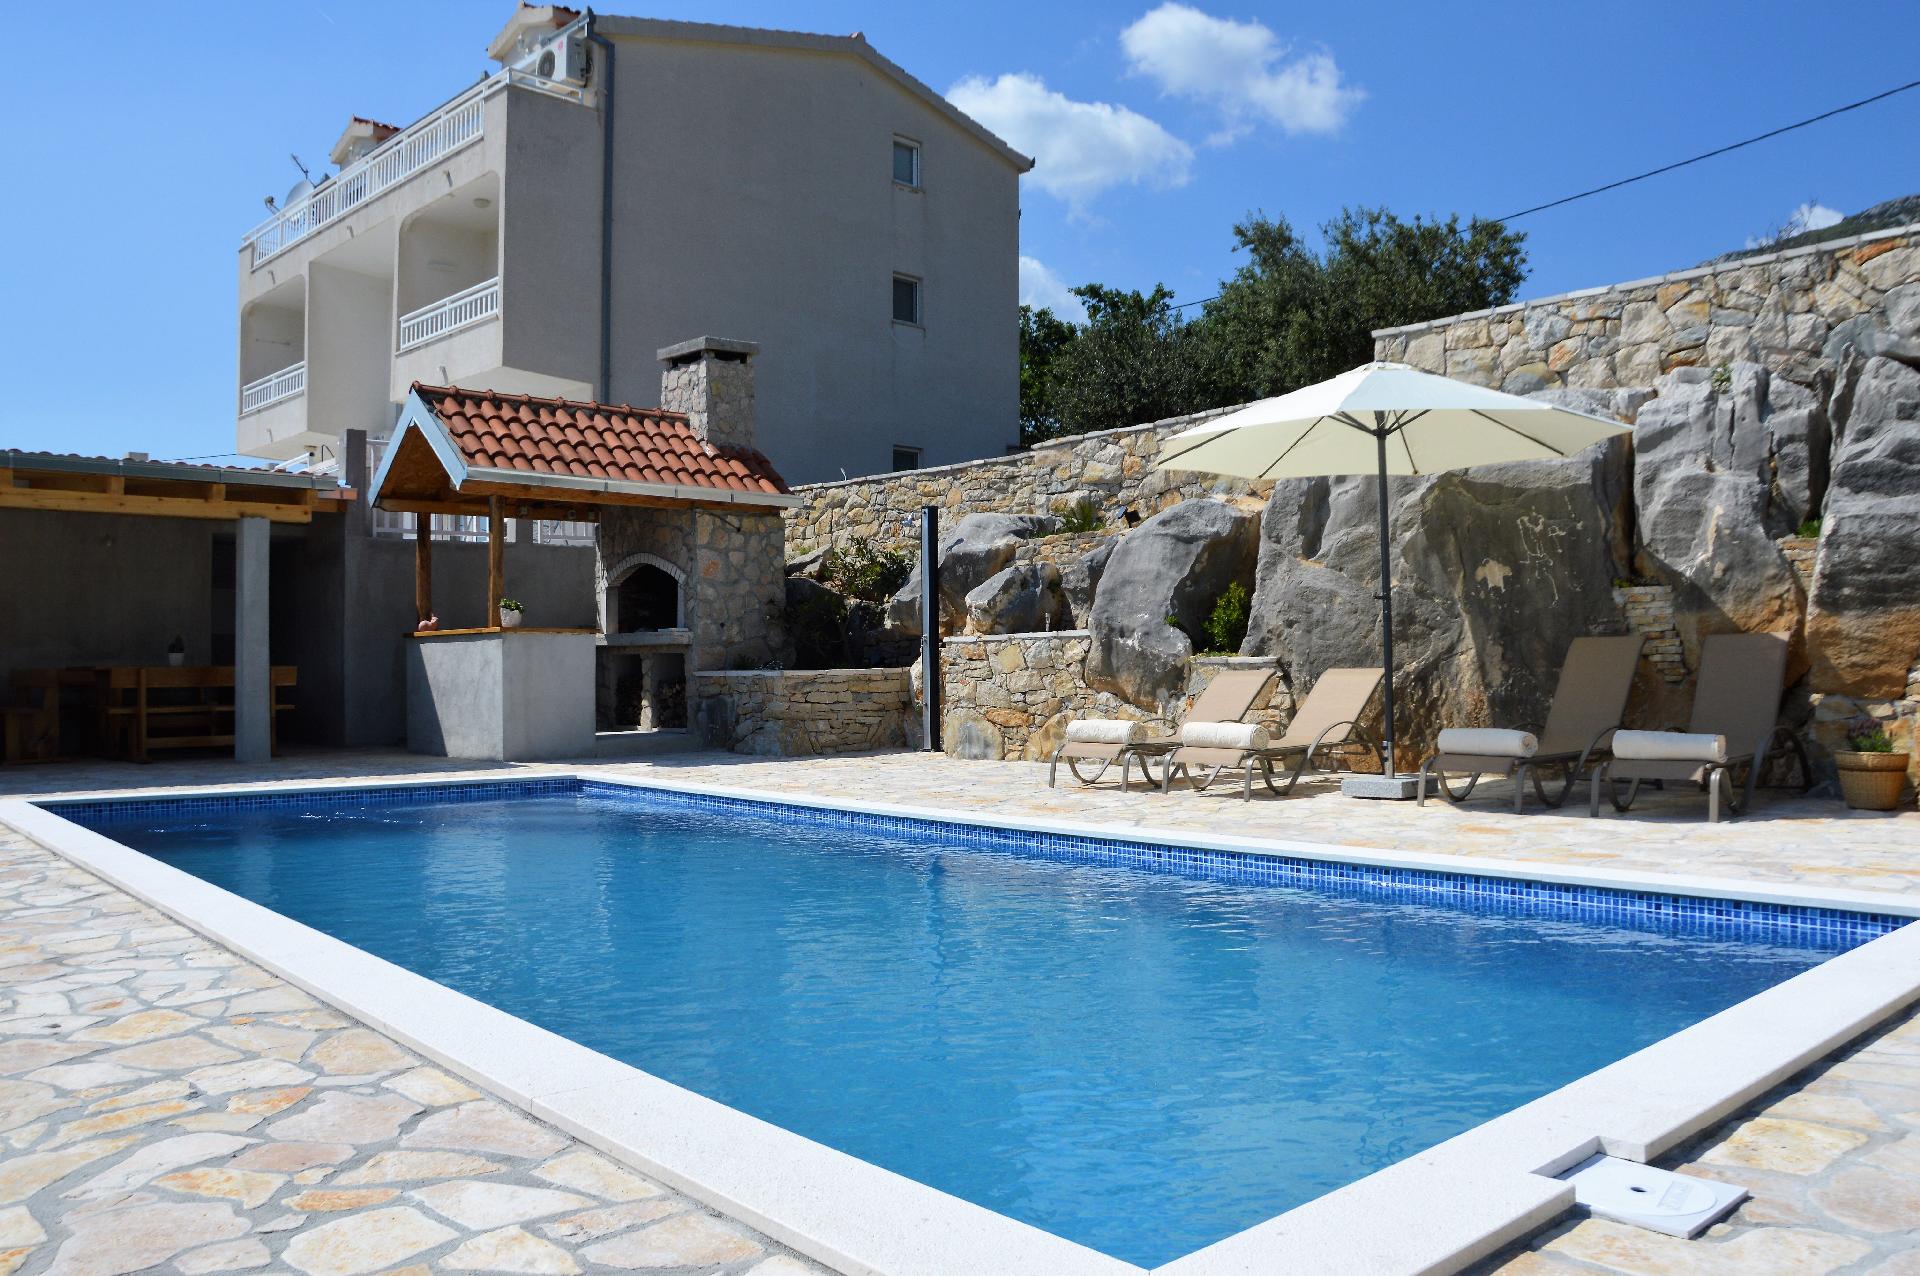 Ferienwohnung für 8 Personen ca. 160 m²  Ferienhaus in Kroatien